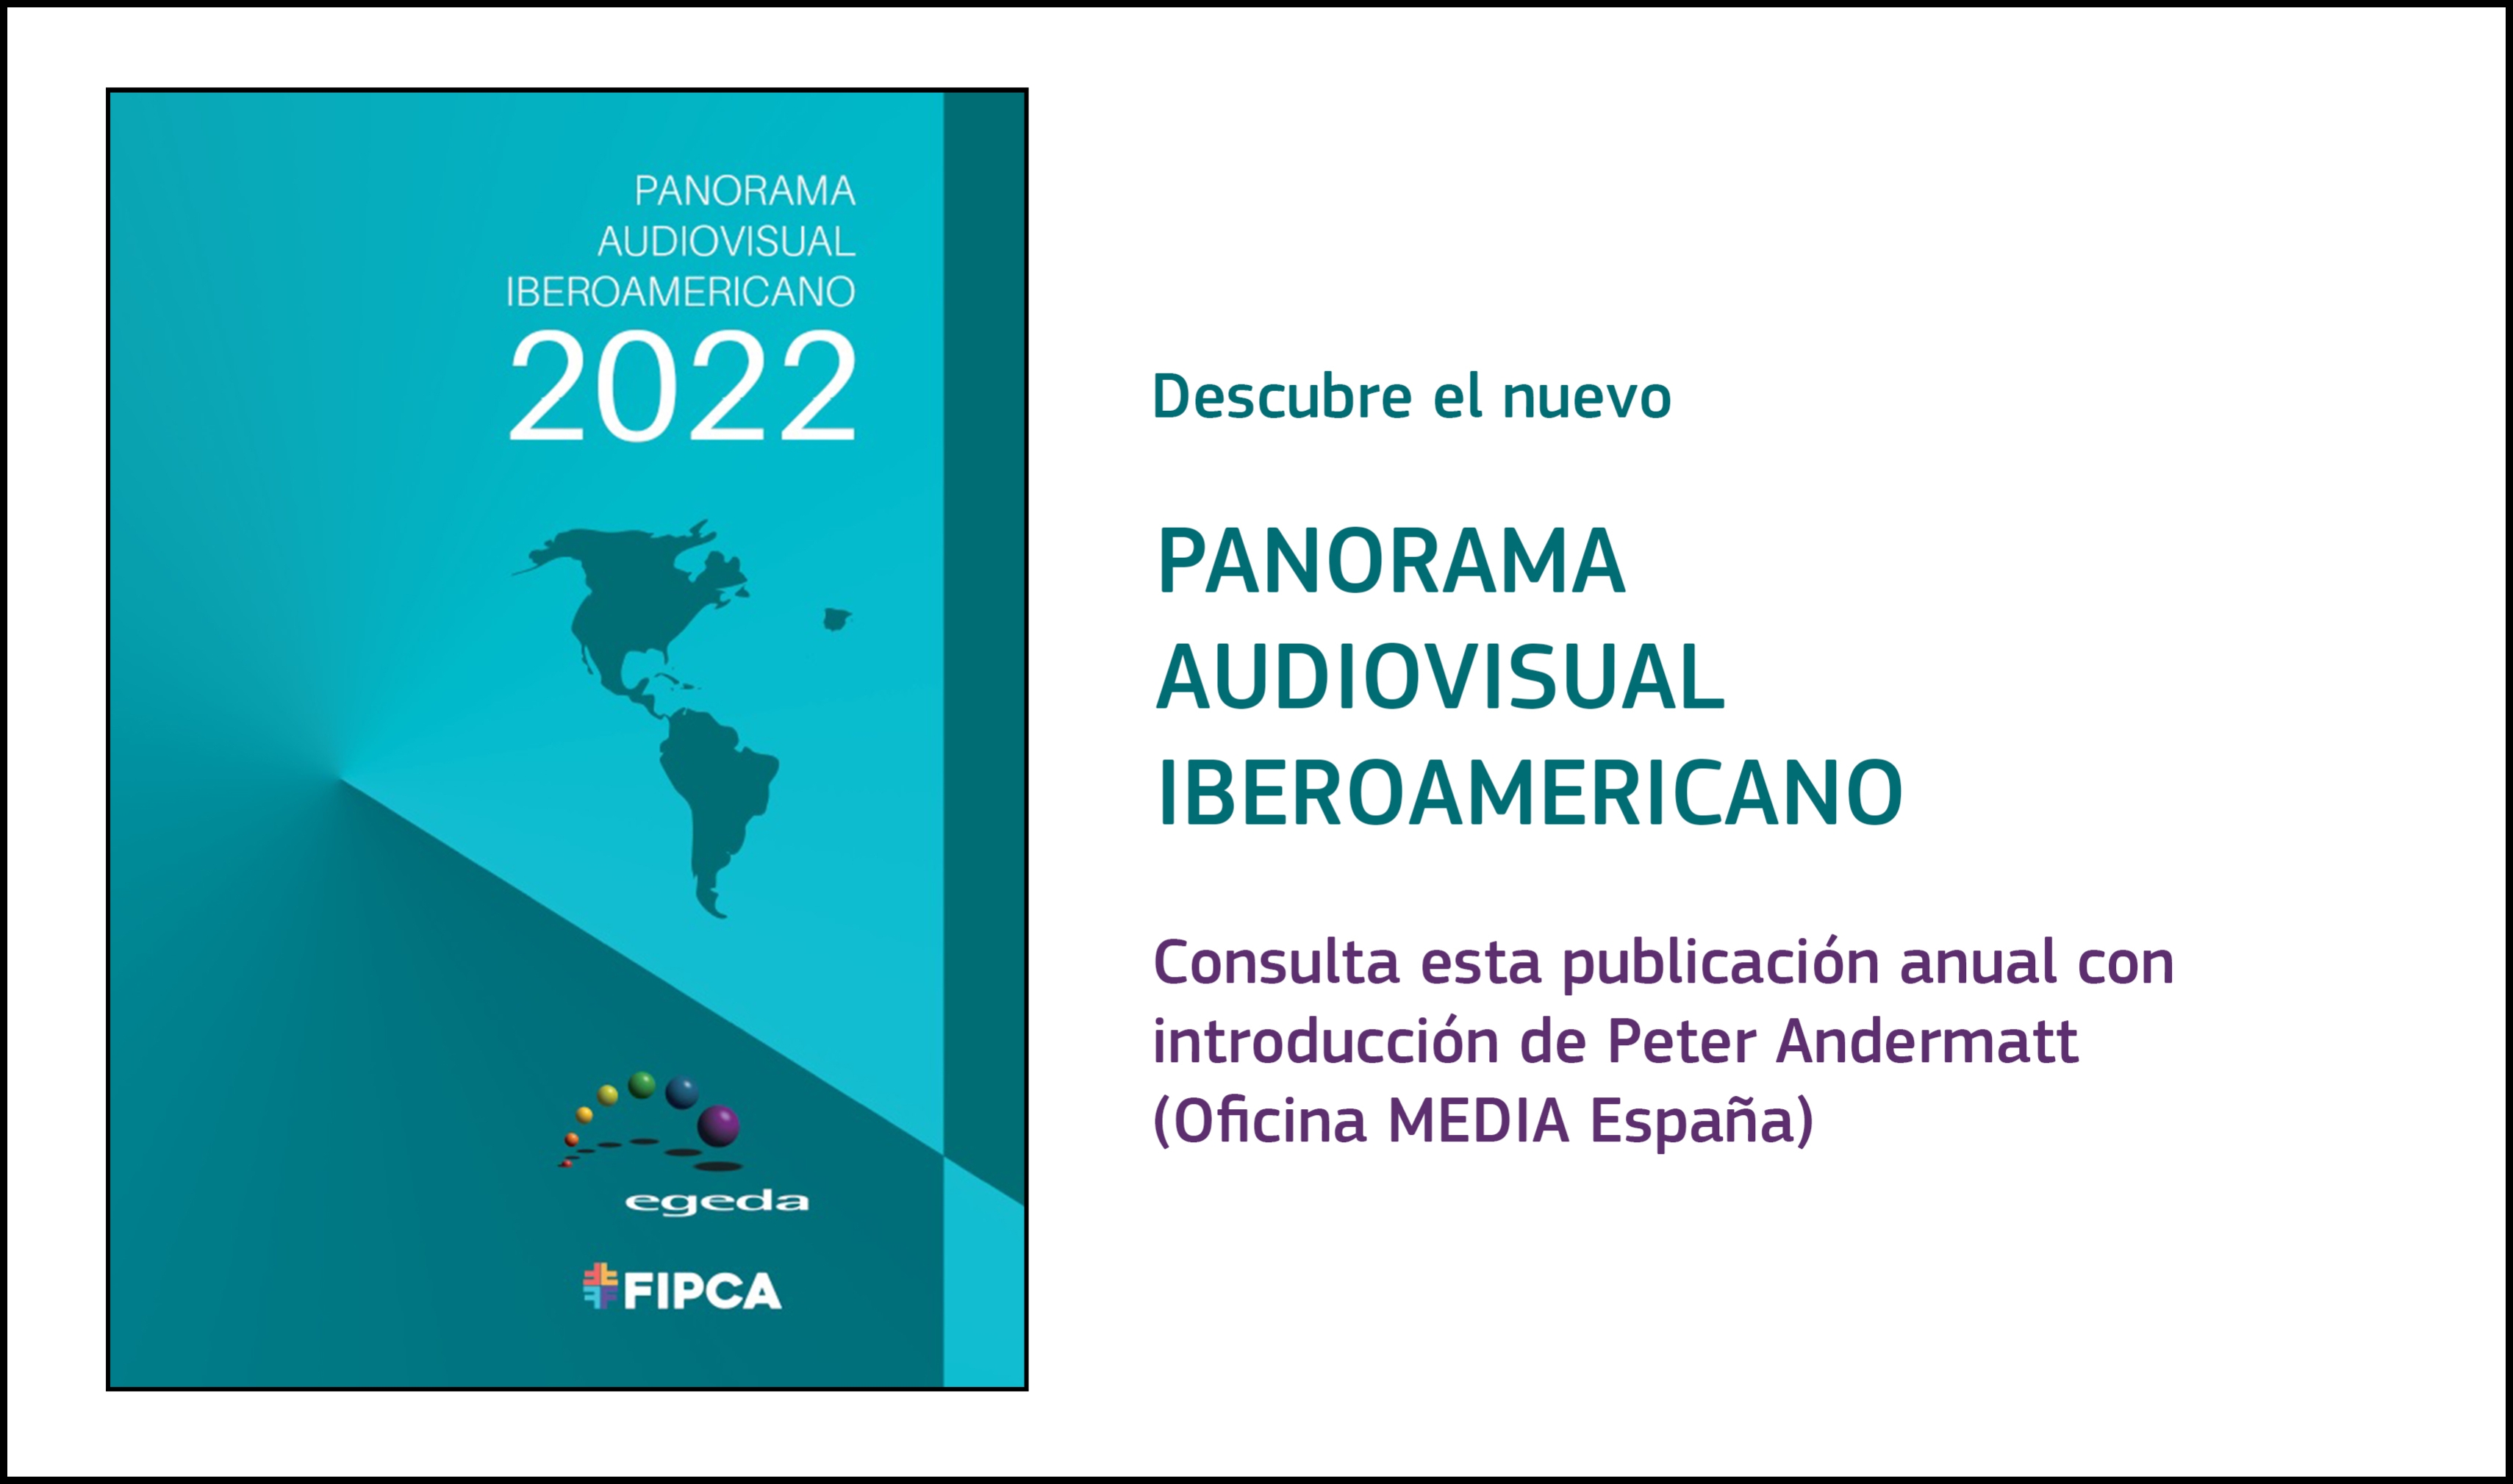 PANORAMA AUDIOVISUAL IBEROAMERICANO 2022: Publicada la nueva edición con introducción de Peter Andermatt (director de Oficina MEDIA España)